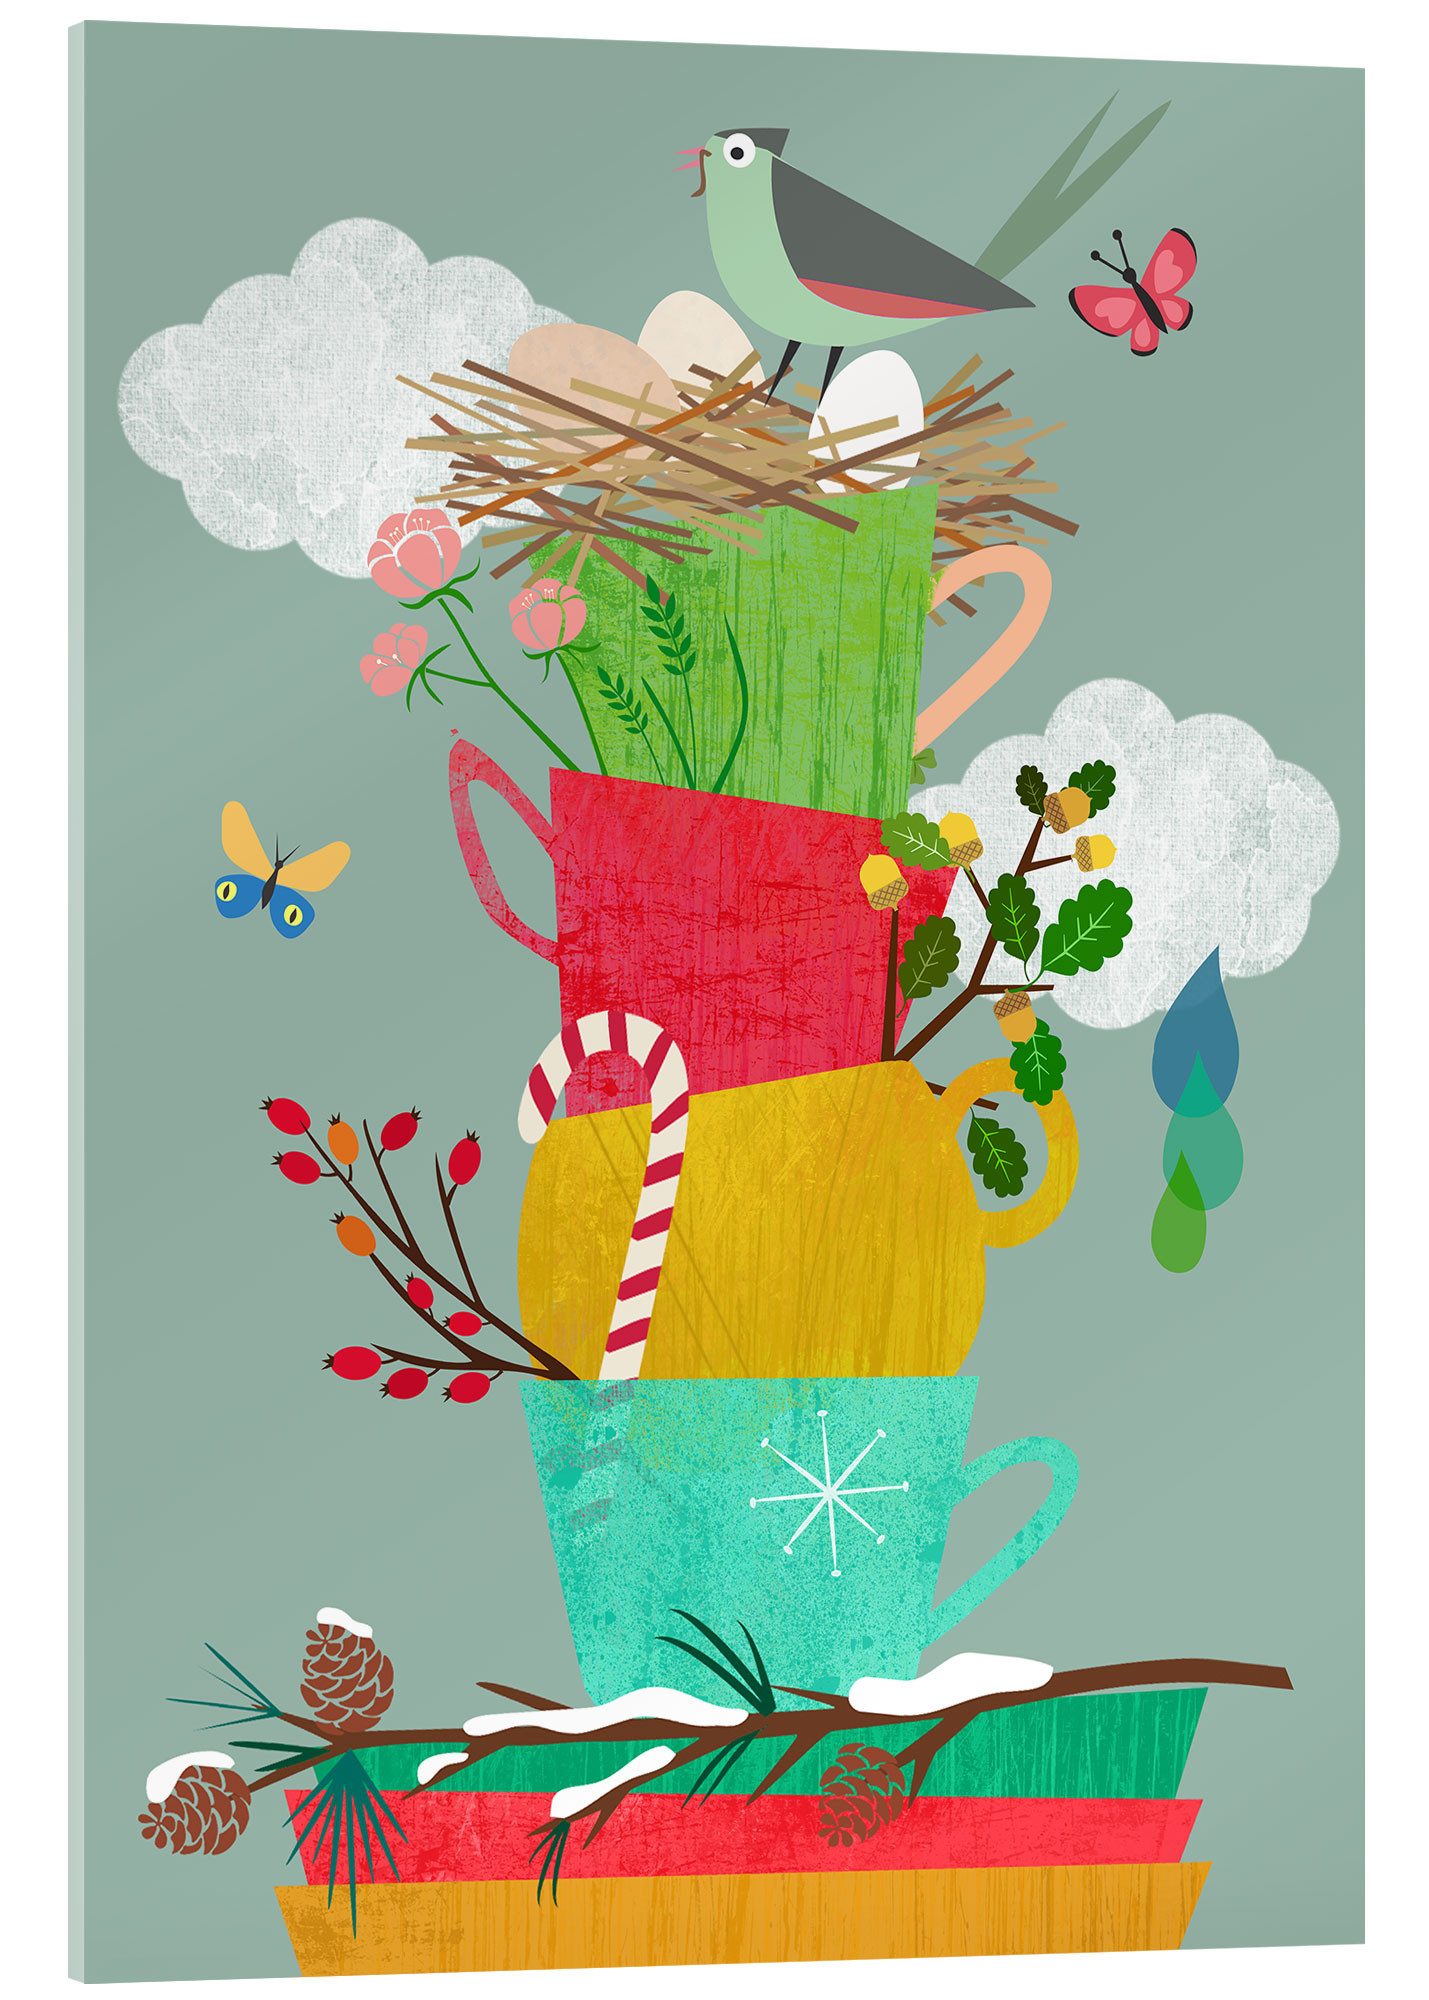 Posterlounge Acrylglasbild Taika Tori, Vier Jahreszeiten, Küche Skandinavisch Illustration